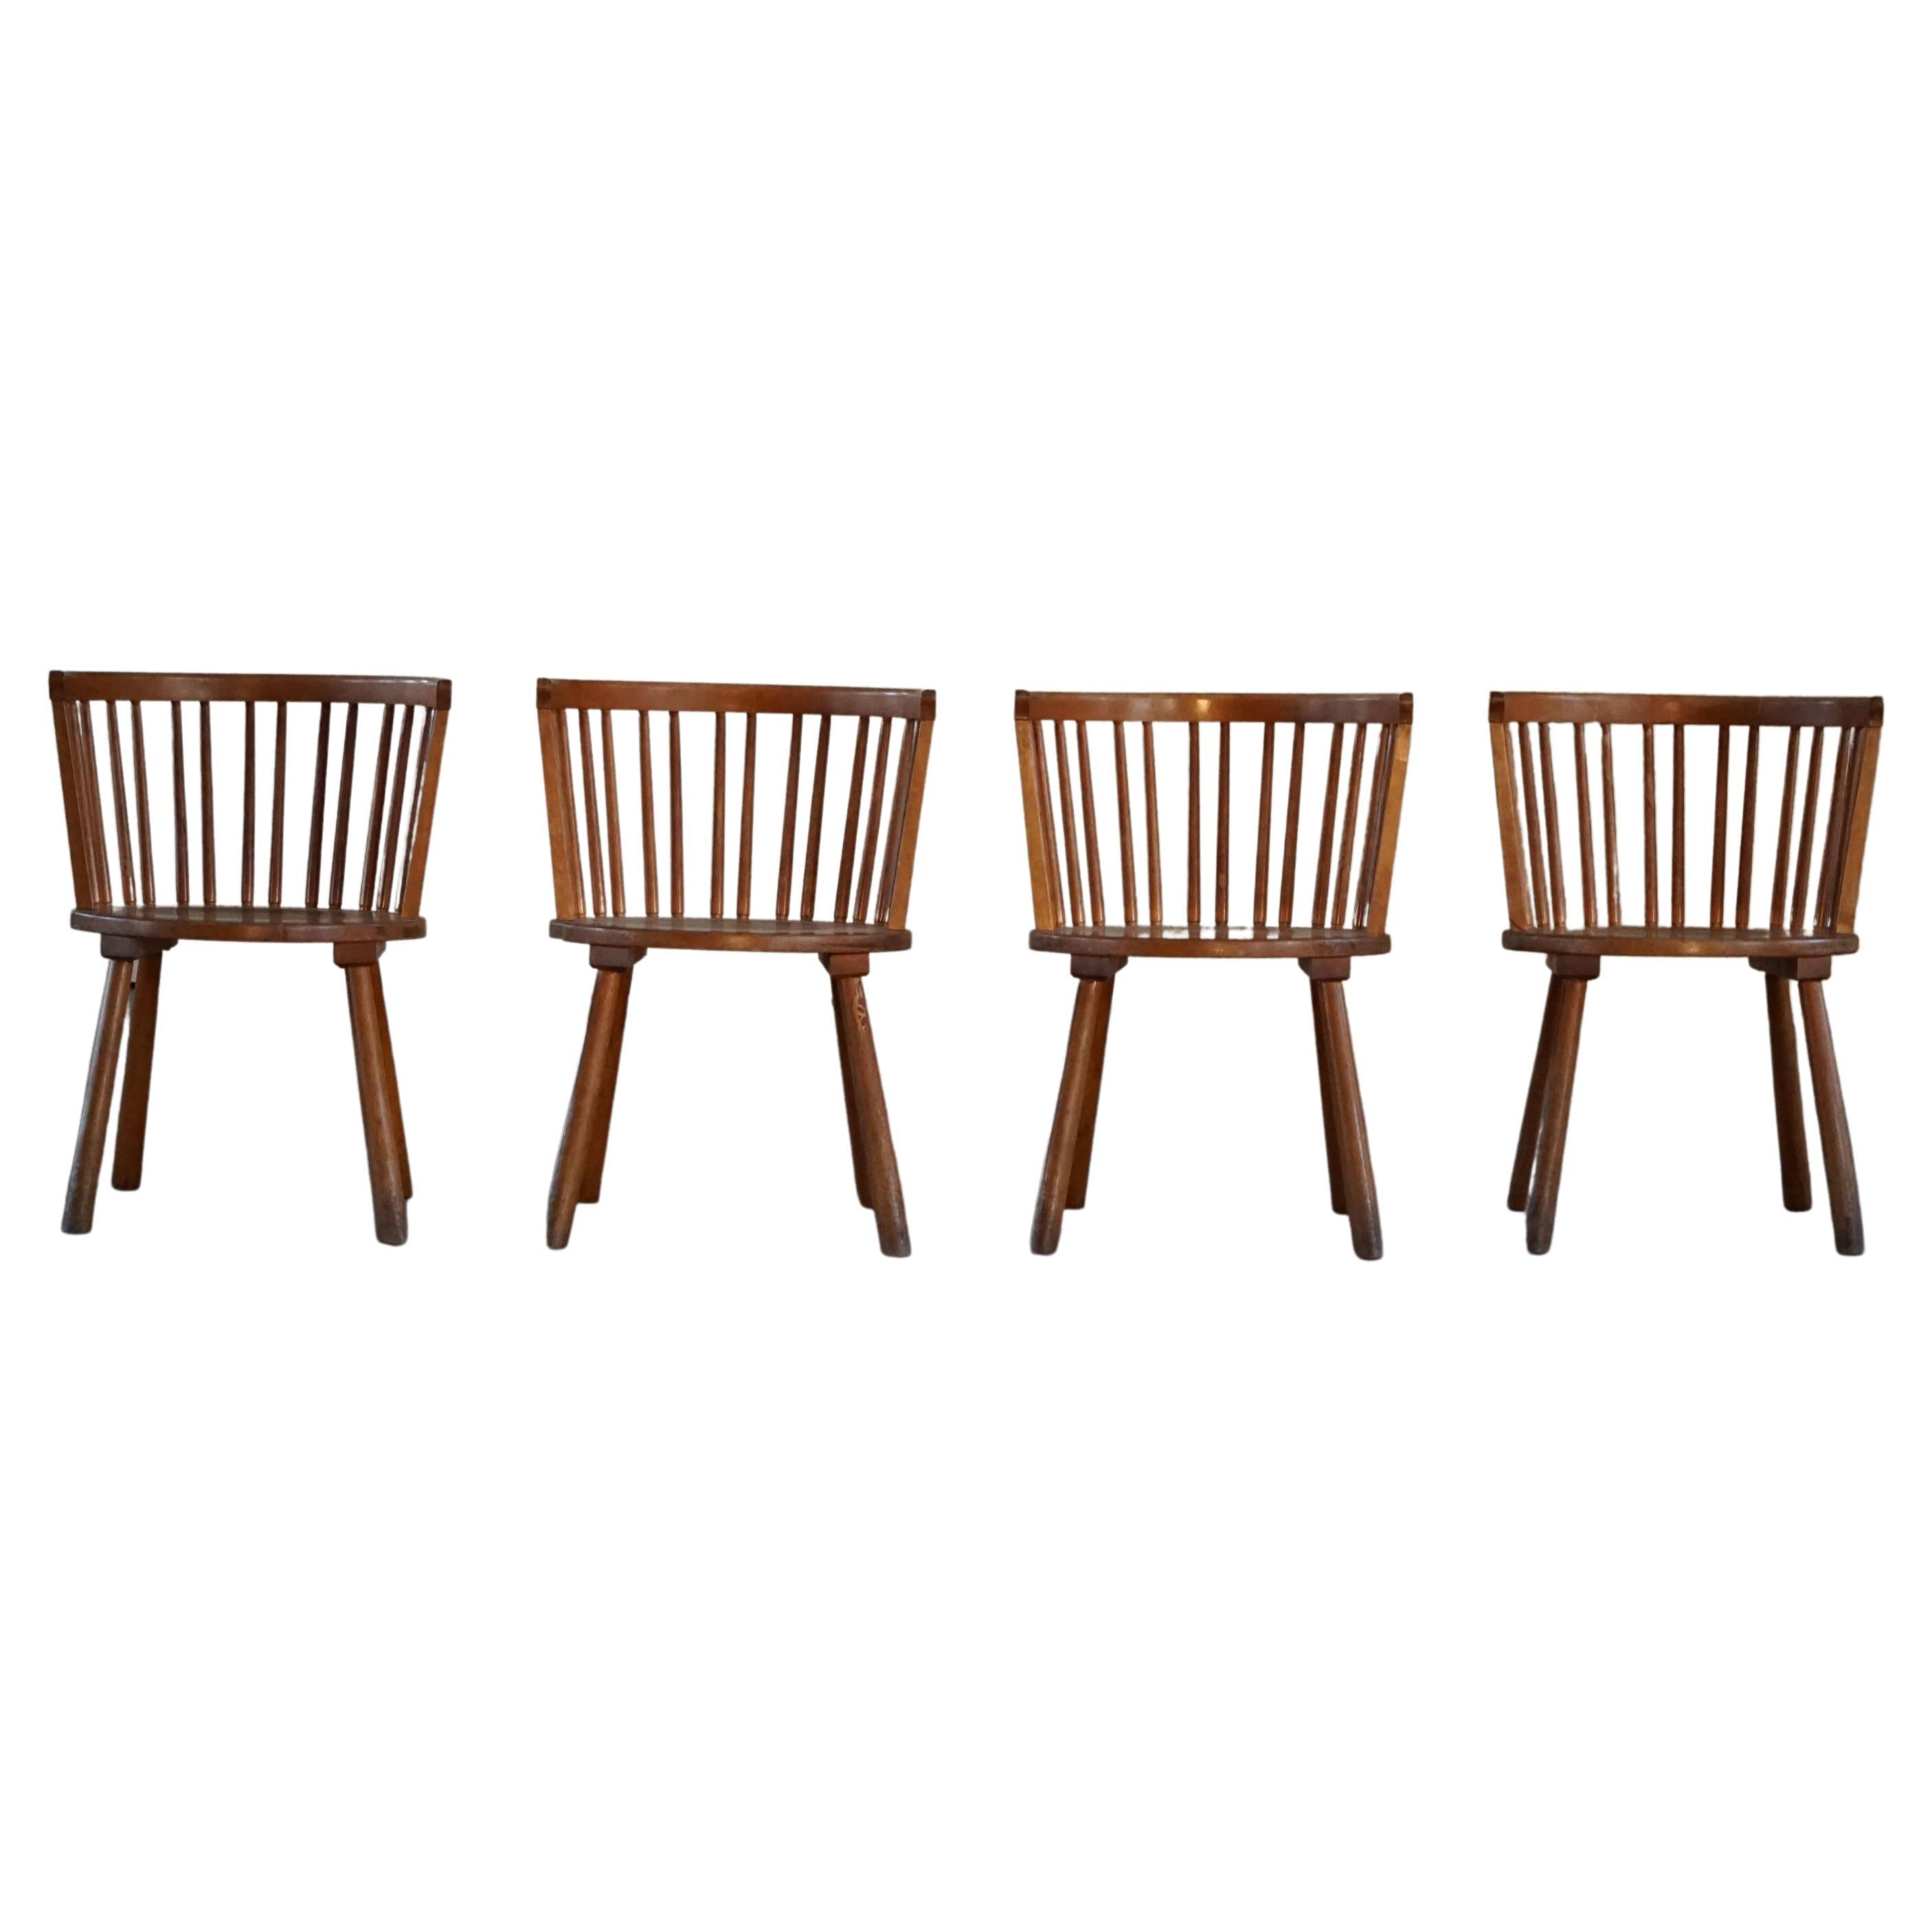 Schwedisches modernes Sesselset aus 4 Sesseln im Stil von Axel Einar Hjorth, 1930er Jahre